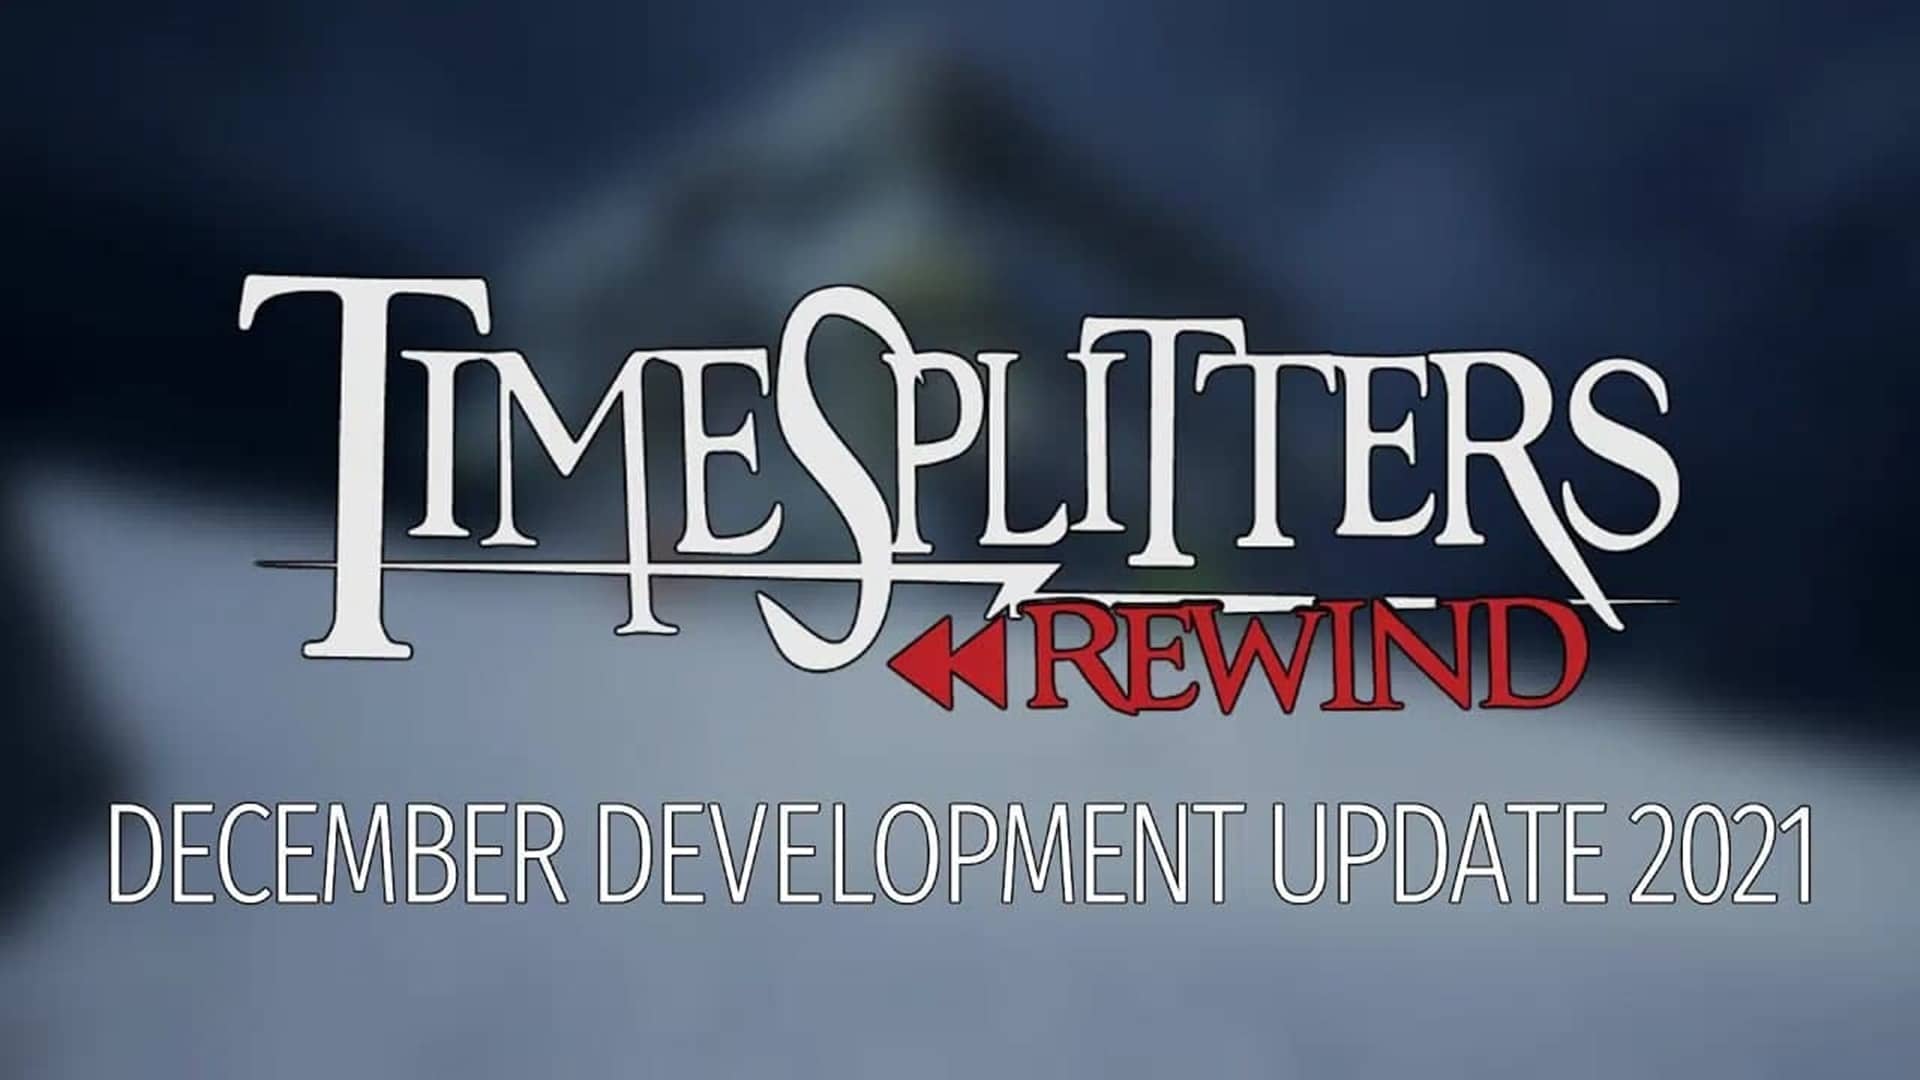 TimeSplitters Rewind, creado por fans, recibe una actualización de desarrollo, GamersRD